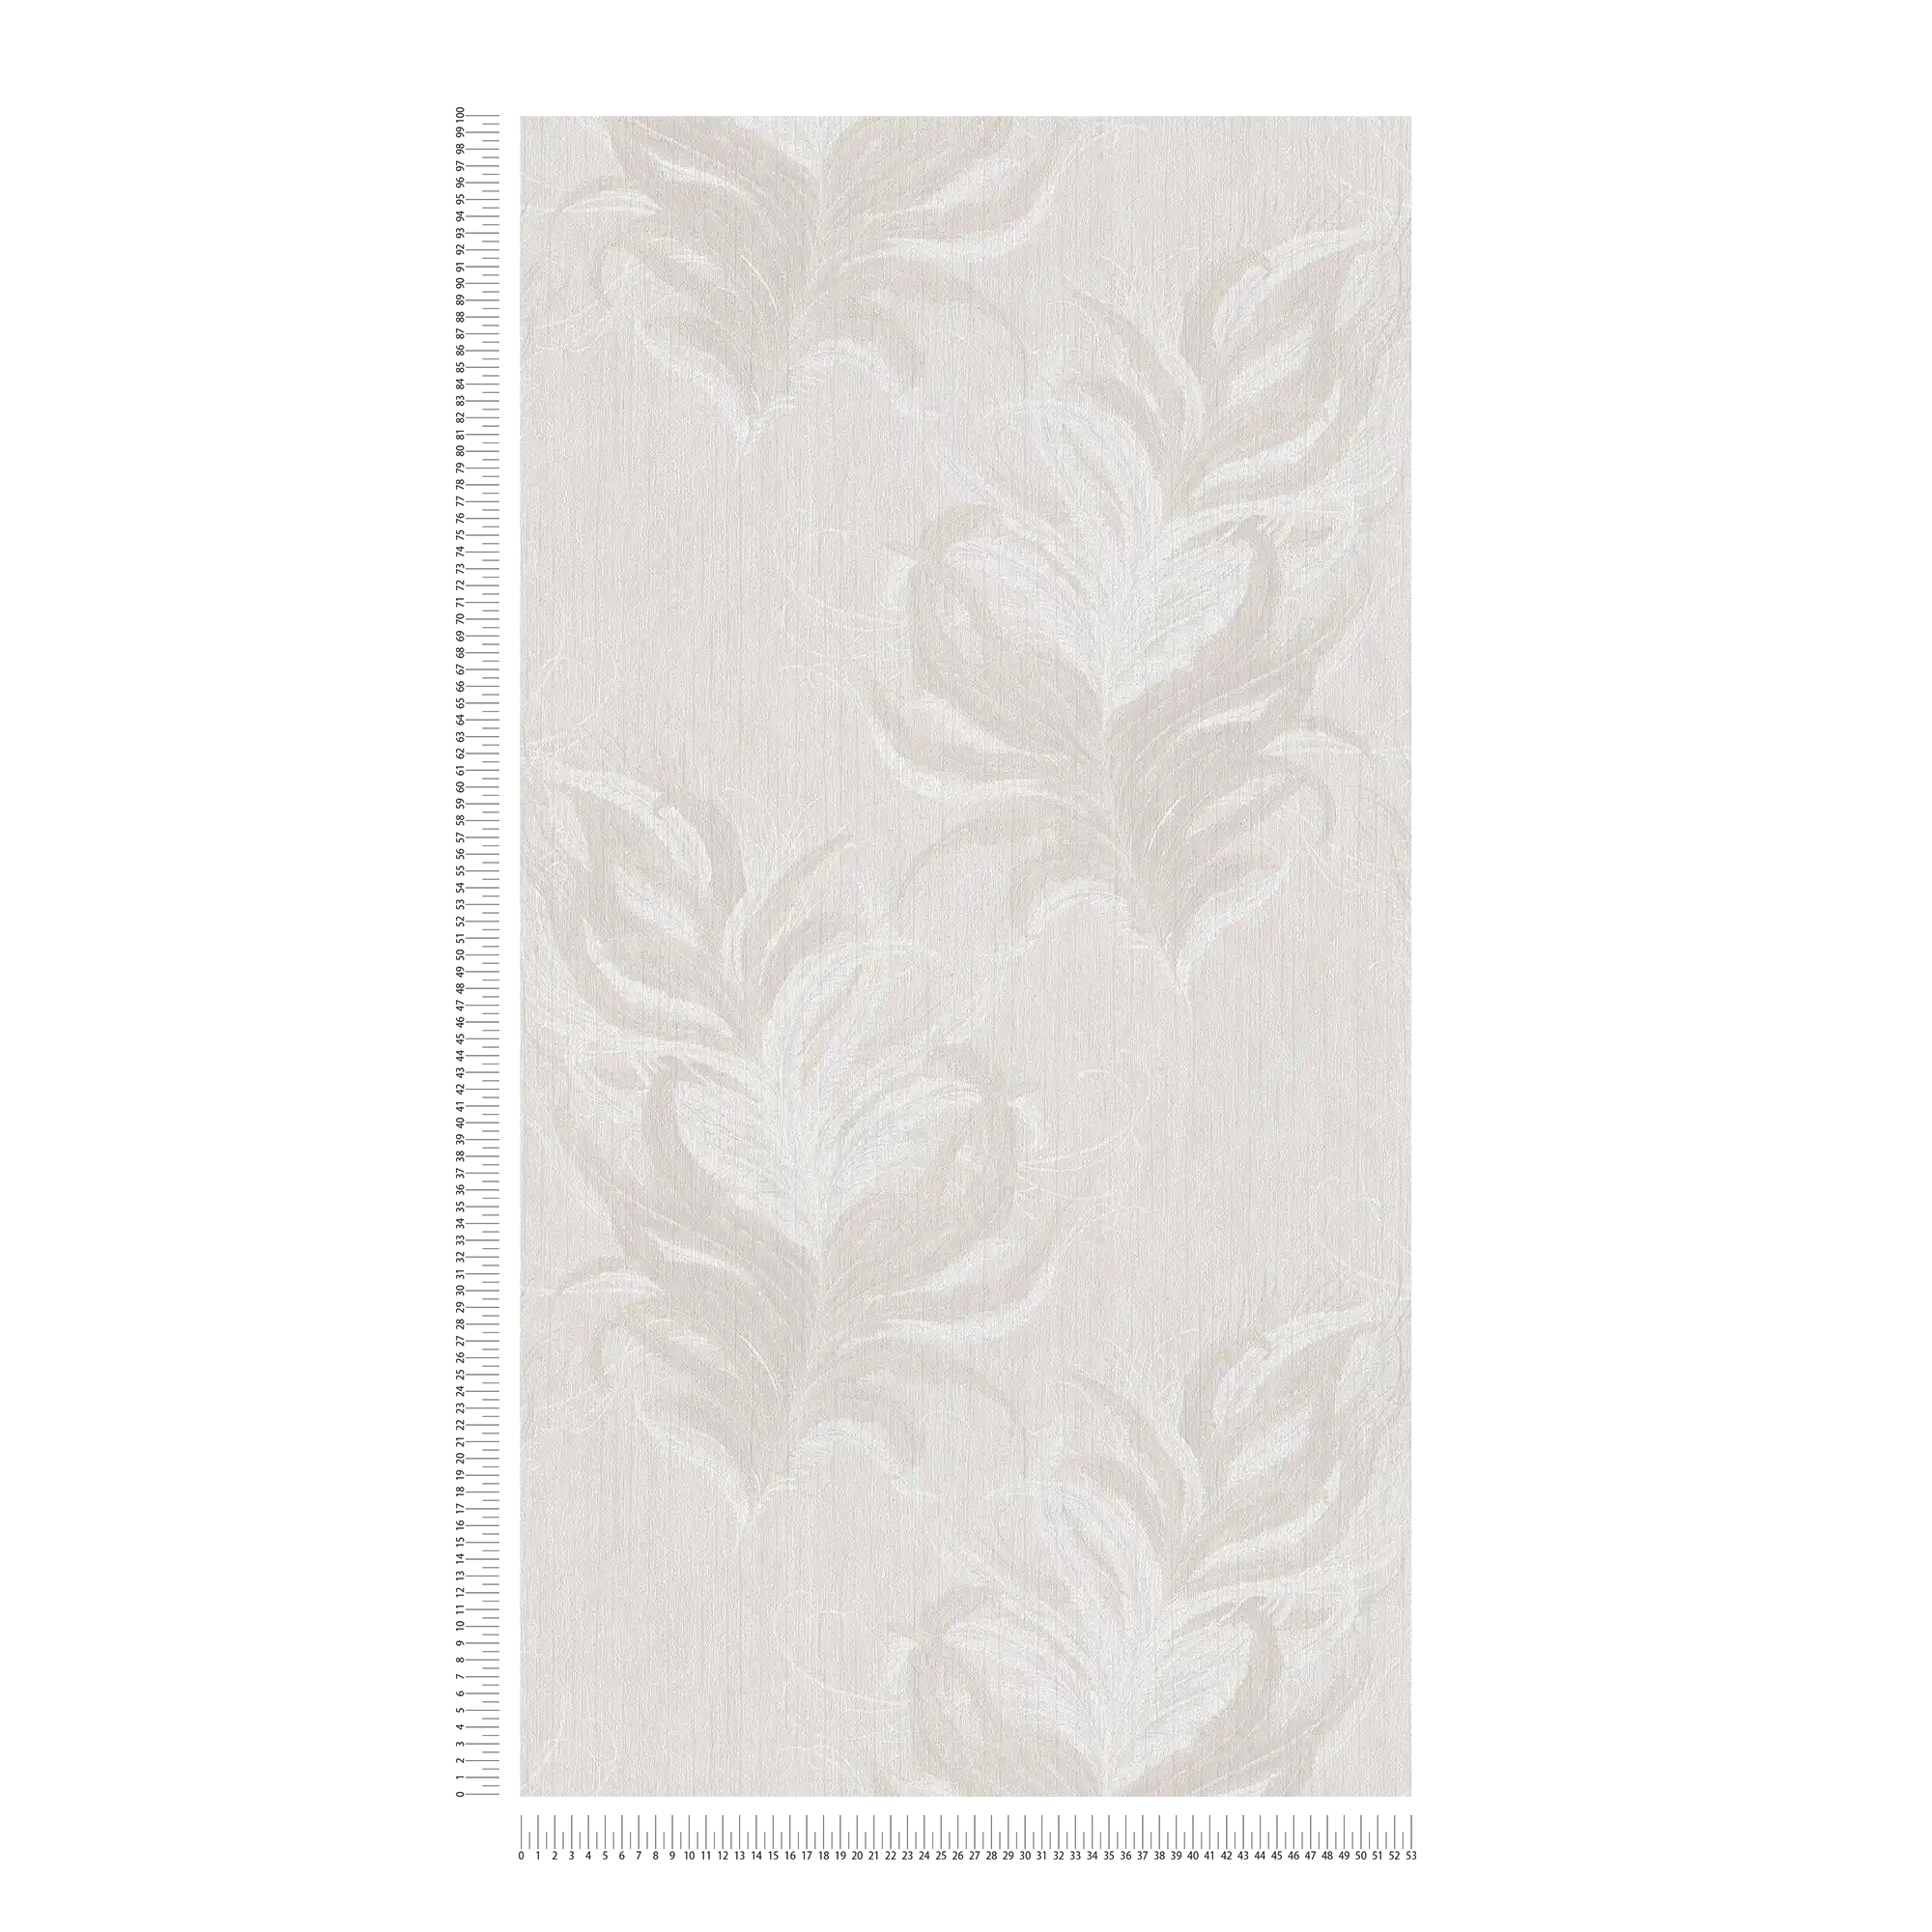             Papel pintado no tejido con diseño de plumas y efecto brillo estructural - blanco, gris
        